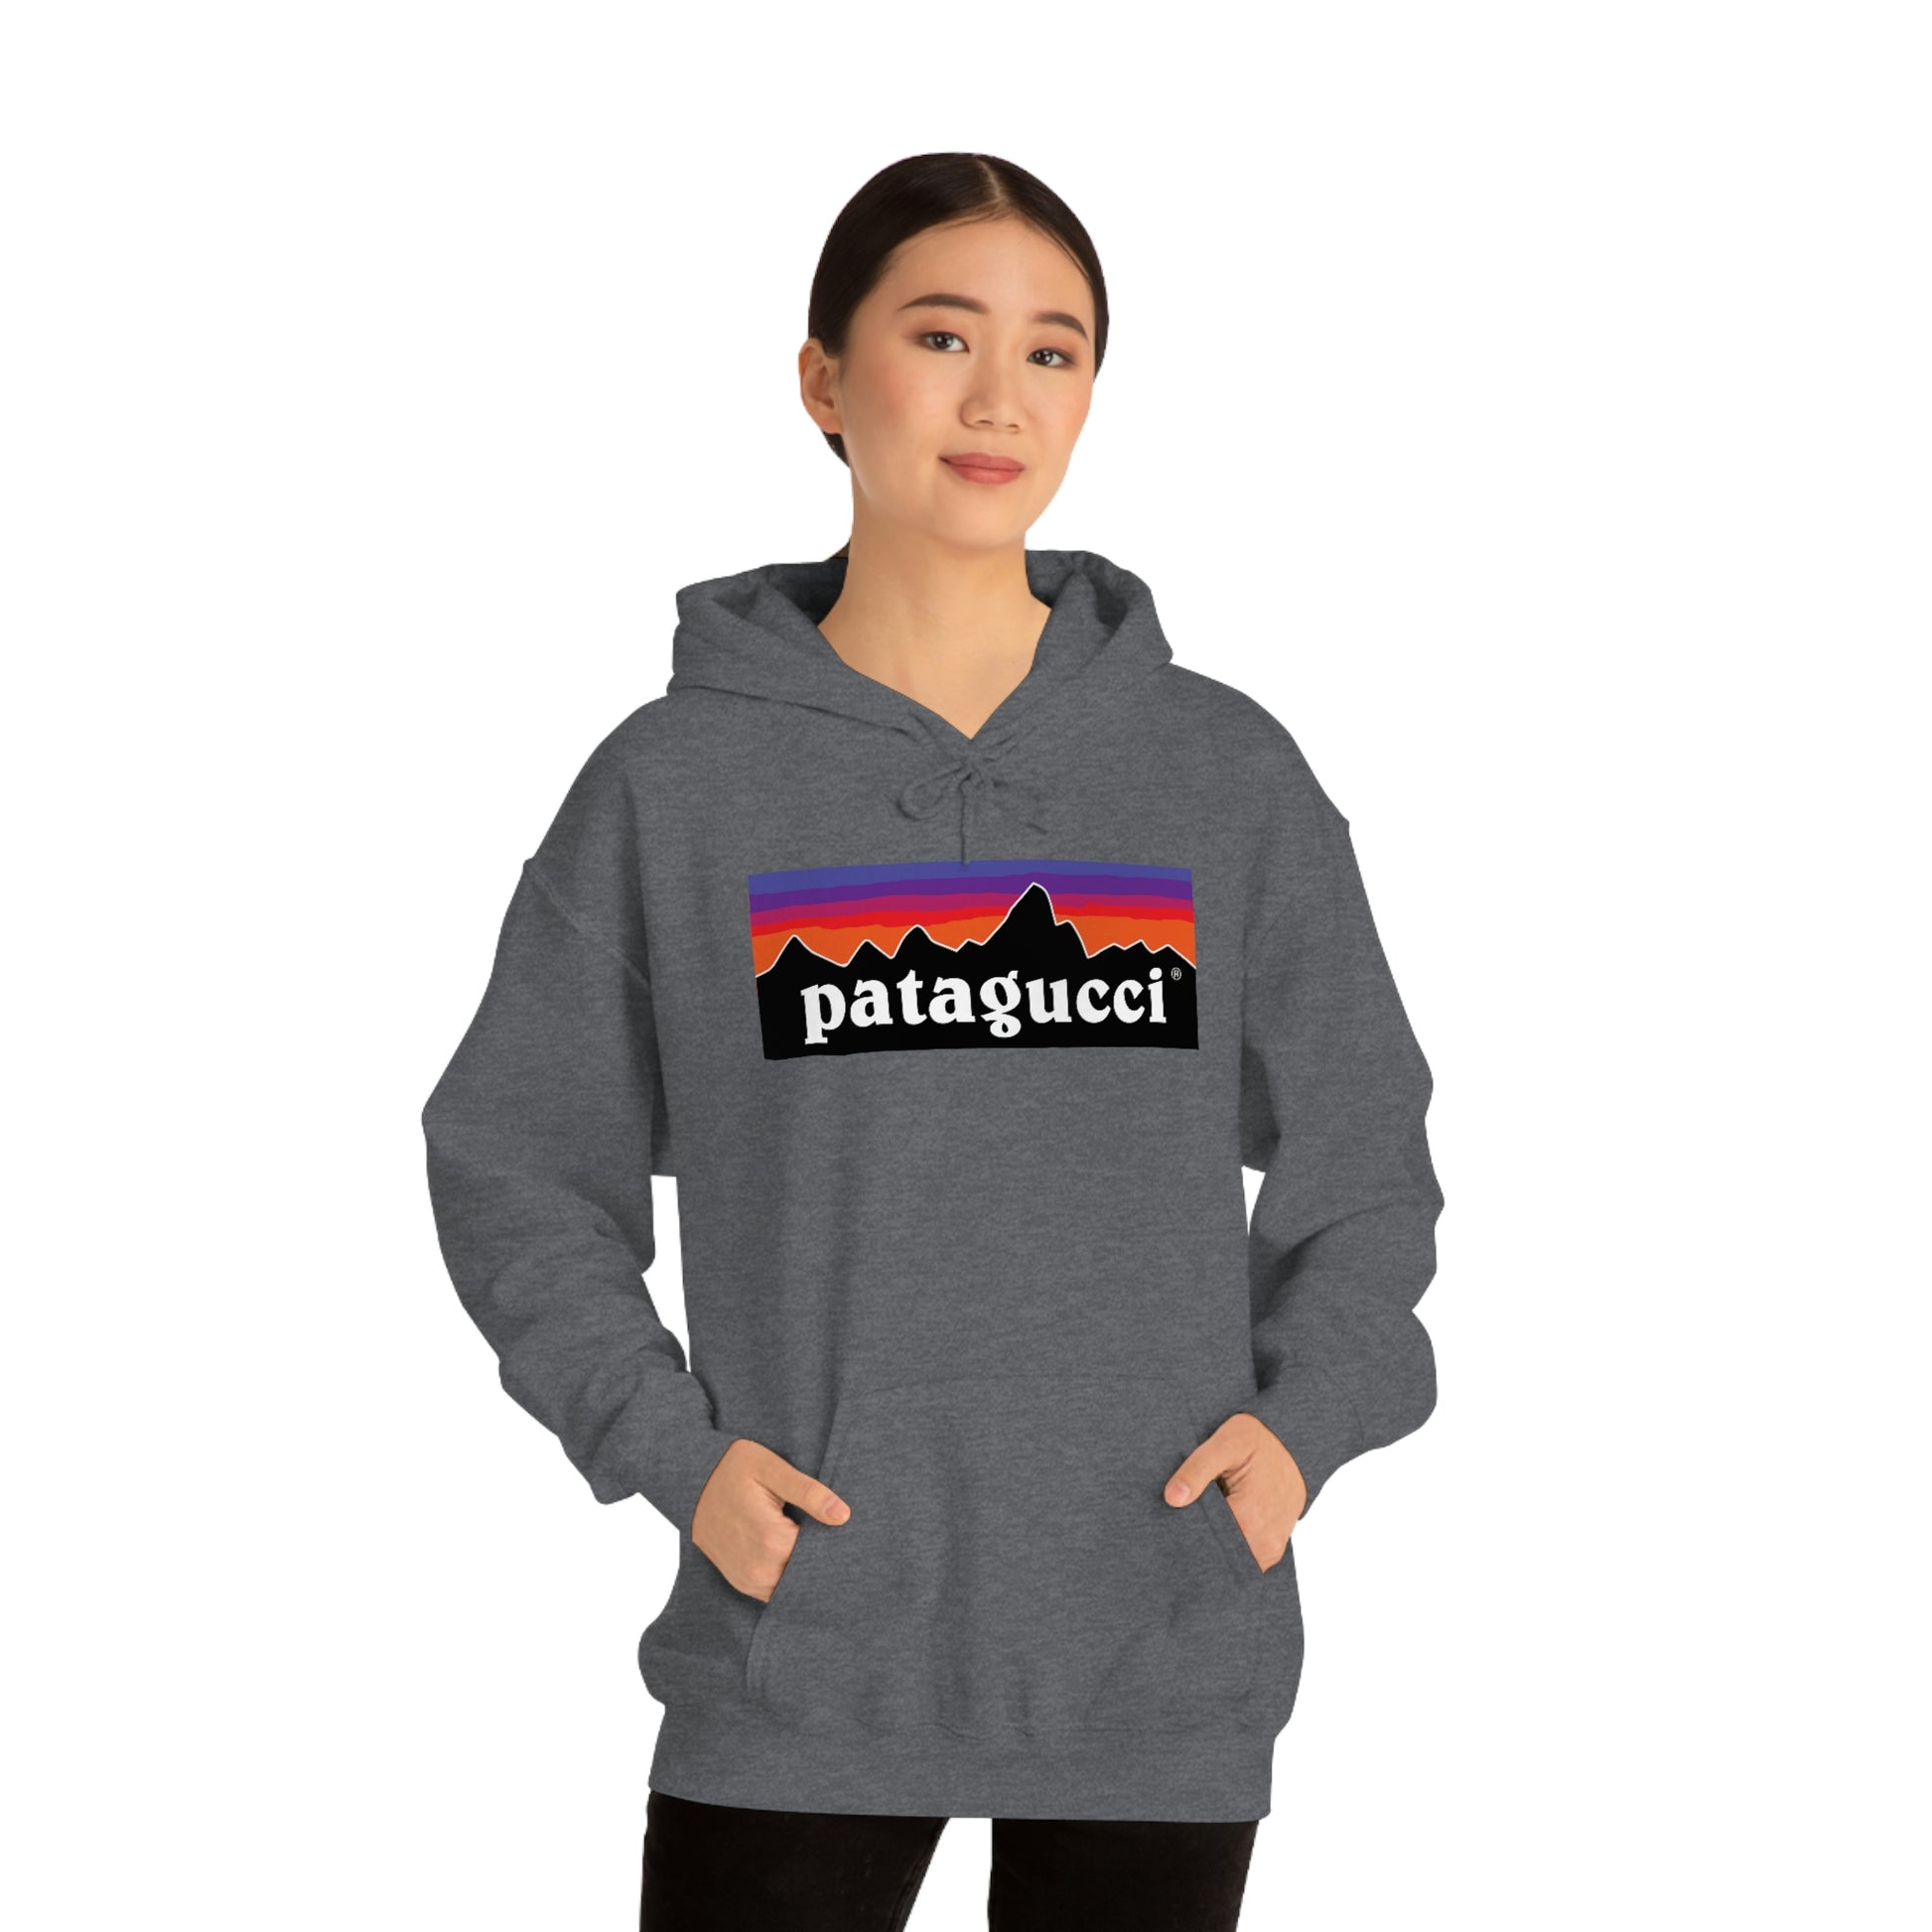 Patagonia hoodie  Patagonia hoodie, Hoodies shop, Clothes design